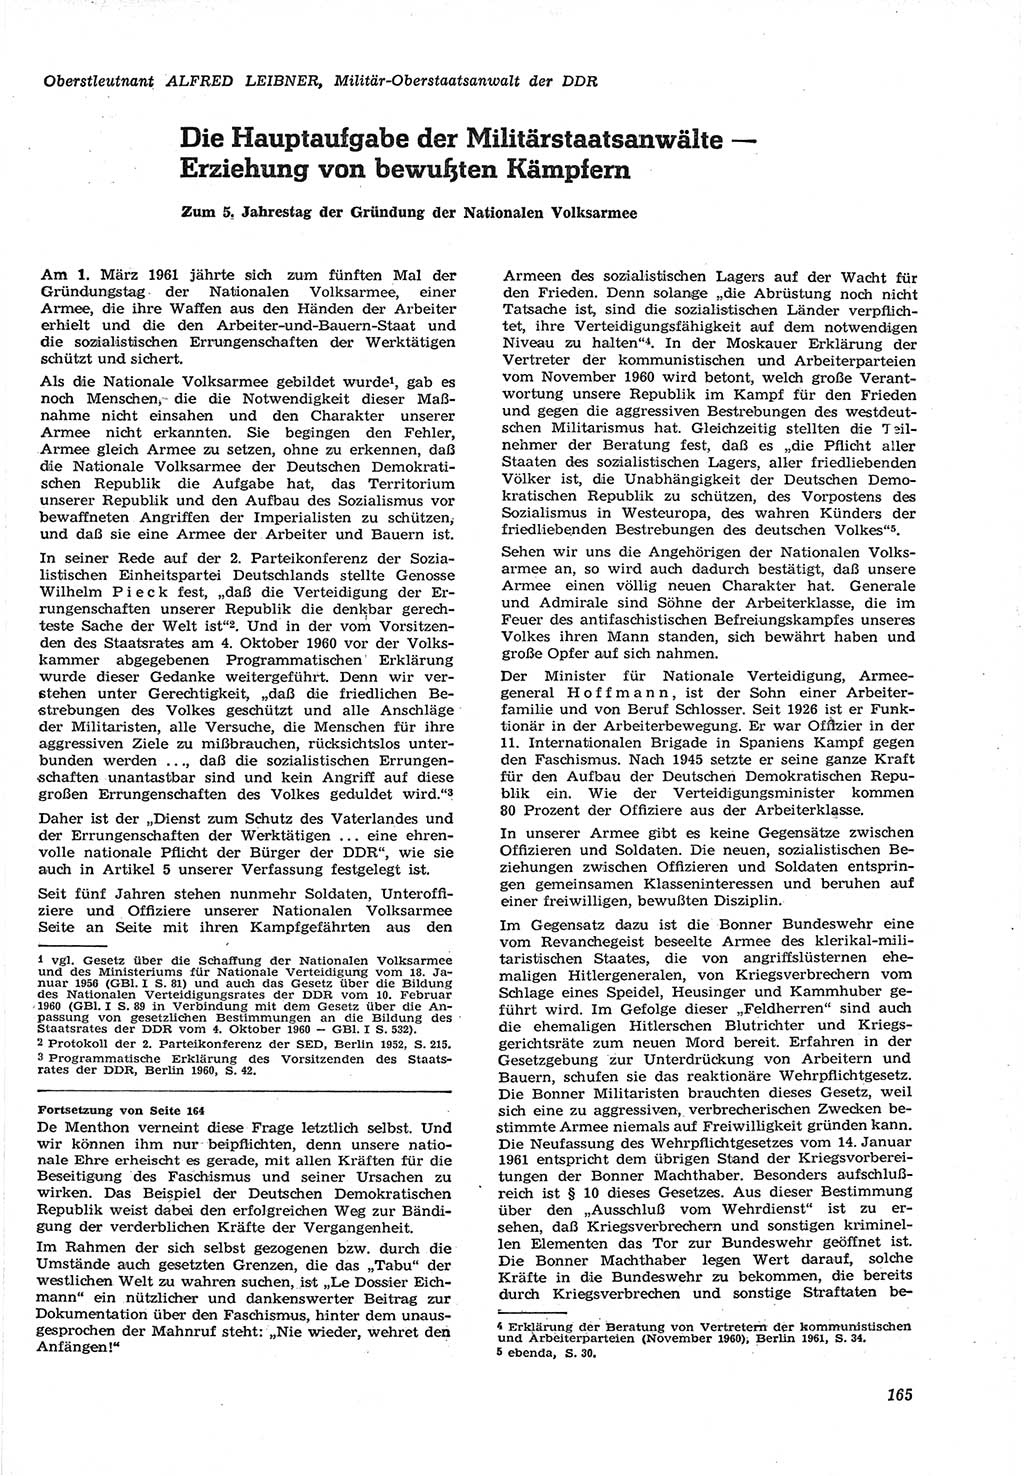 Neue Justiz (NJ), Zeitschrift für Recht und Rechtswissenschaft [Deutsche Demokratische Republik (DDR)], 15. Jahrgang 1961, Seite 165 (NJ DDR 1961, S. 165)